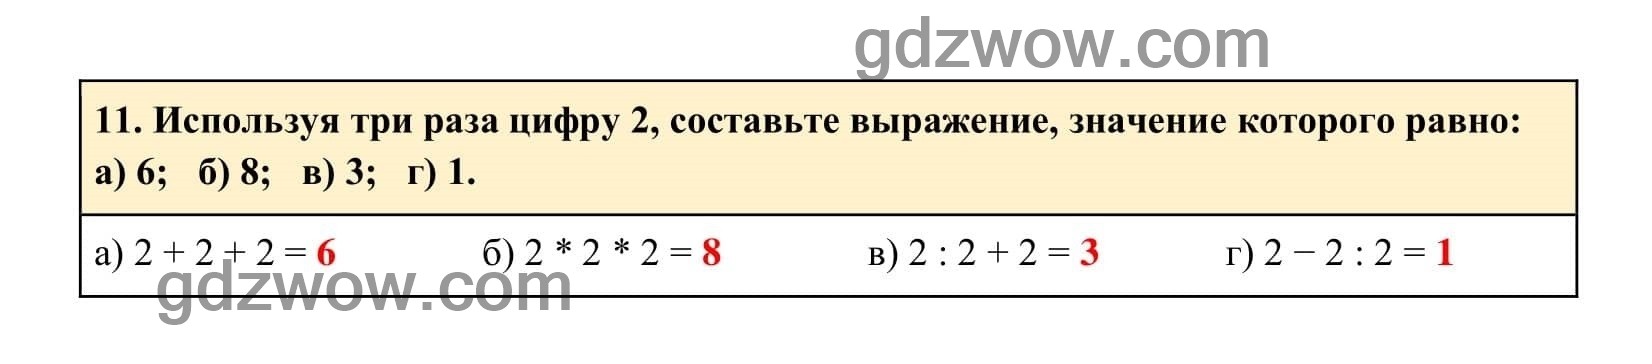 Упражнение 11 - ГДЗ по Алгебре 7 класс Учебник Макарычев (решебник) - GDZwow